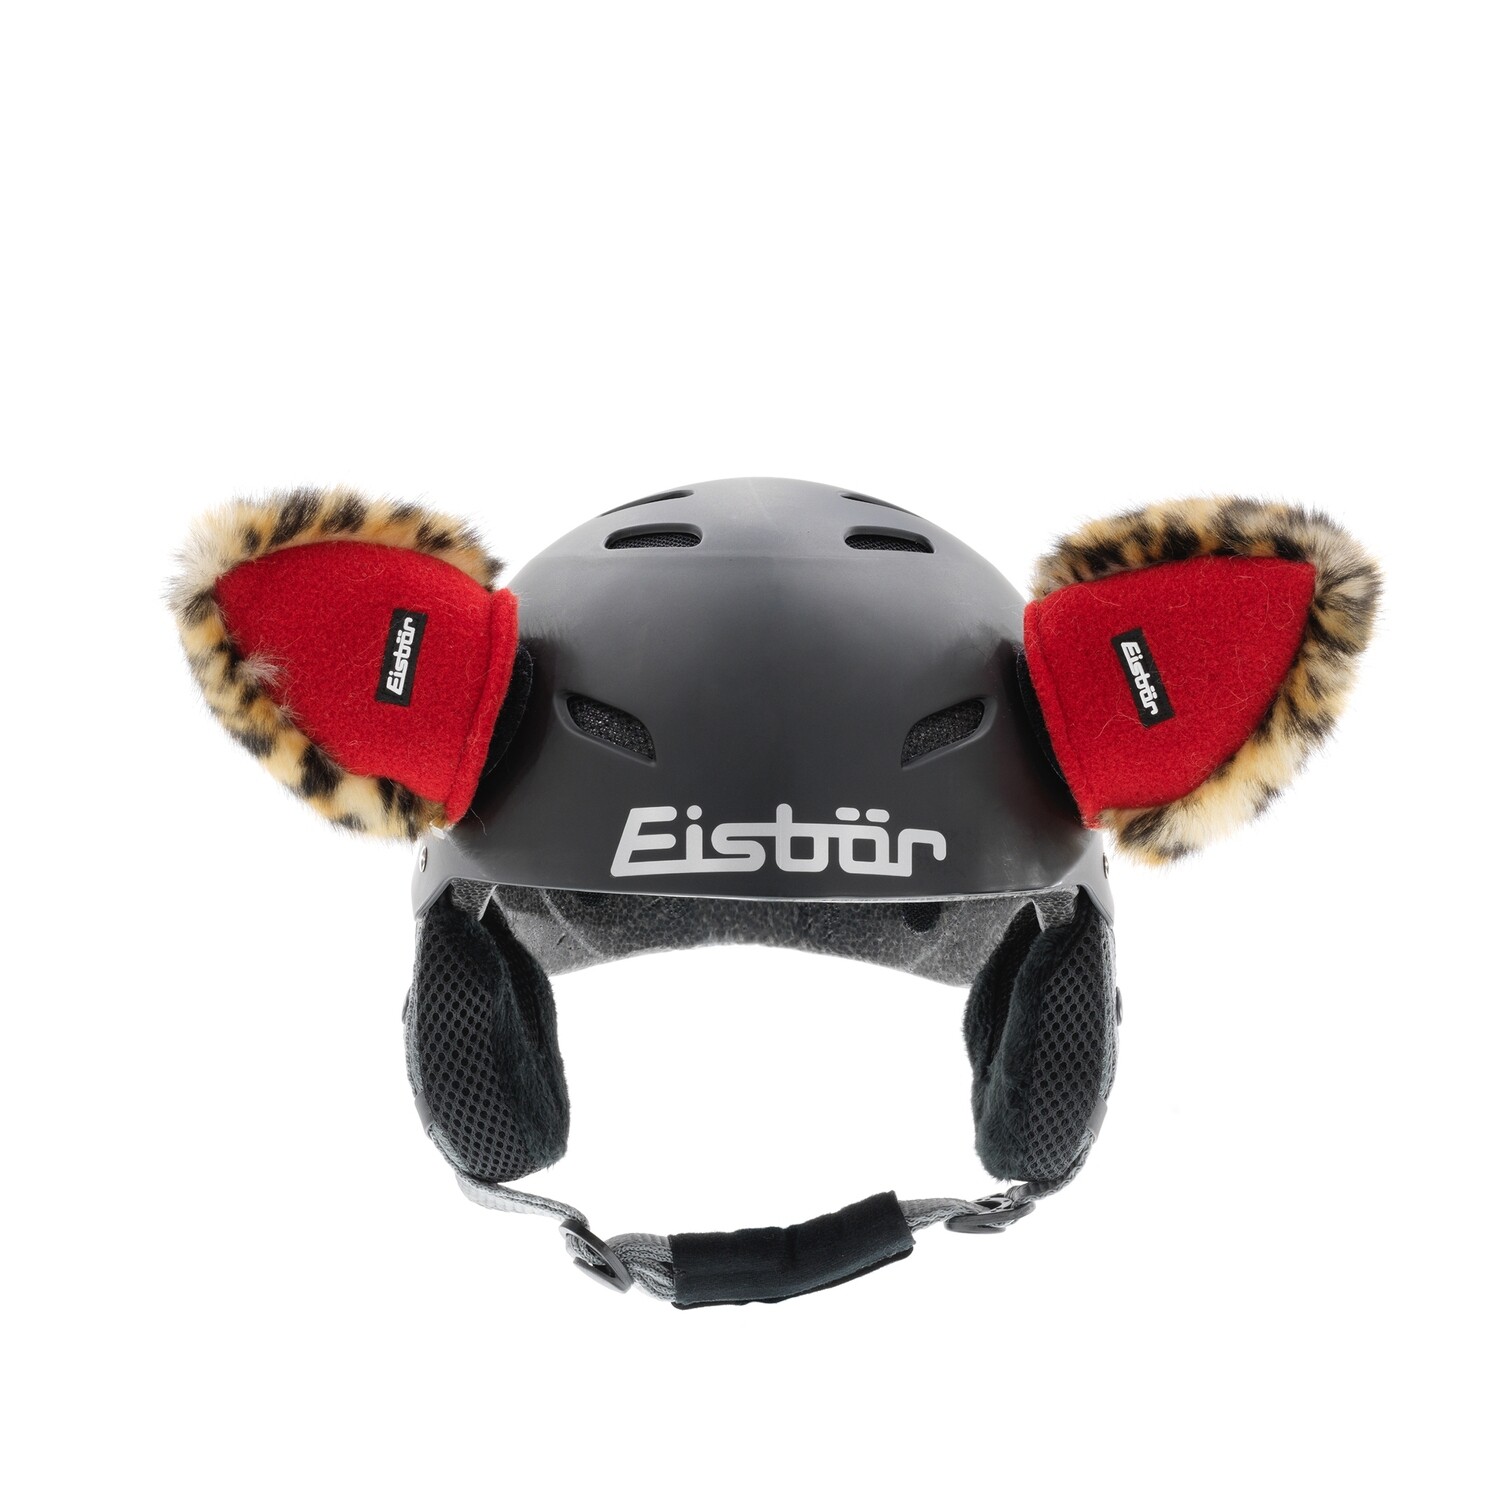 Аксессуар для шлема EISBAR Helmet Ears (318)